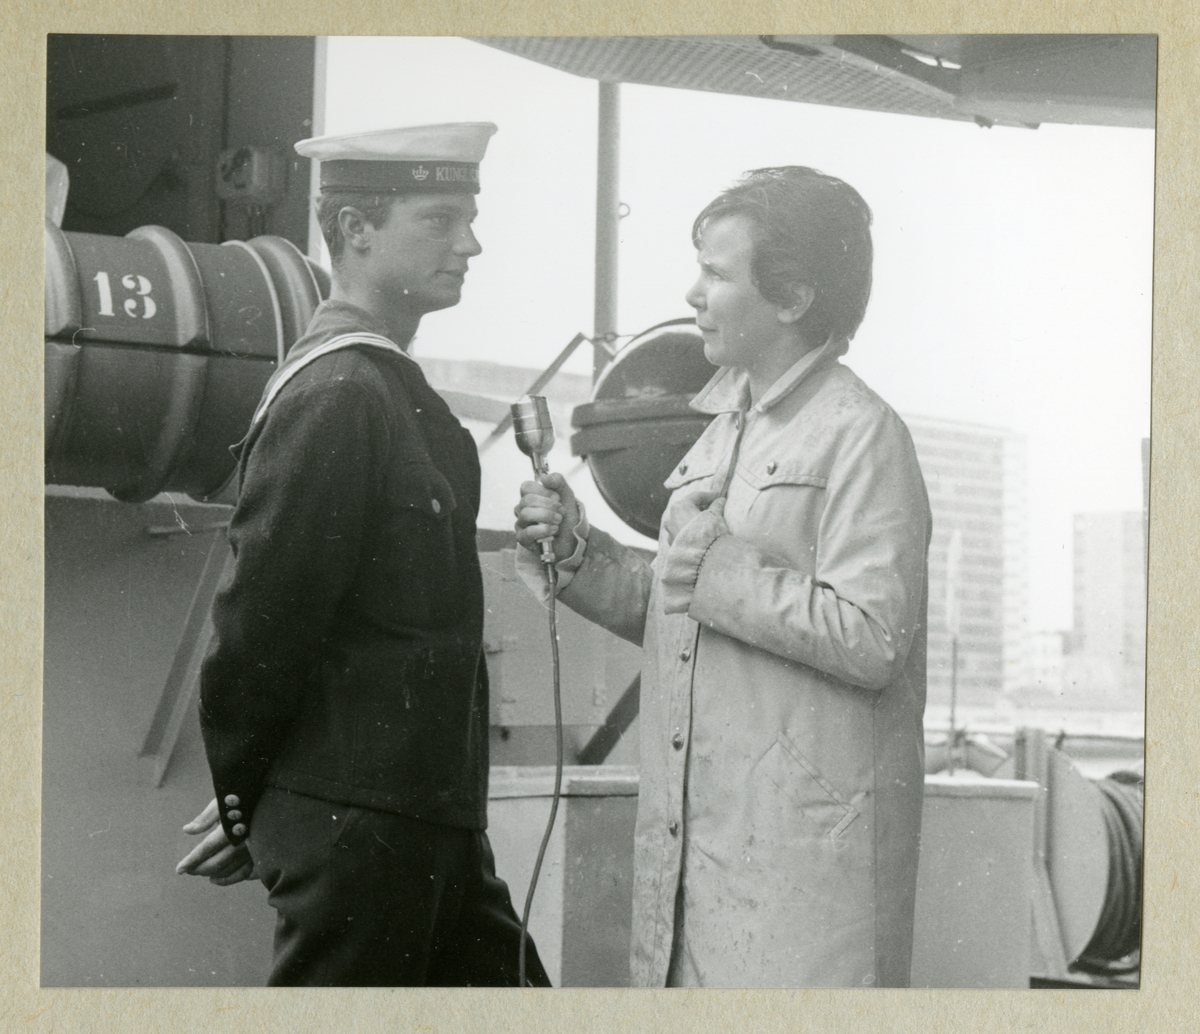 Bilden föreställer en kvinna med en mikrofon som intervjuar kronprinsen Carl Gustaf, som står klädd i uniform. Bilden är tagen under minfartyget Älvsnabbens långresa 1966-1967.